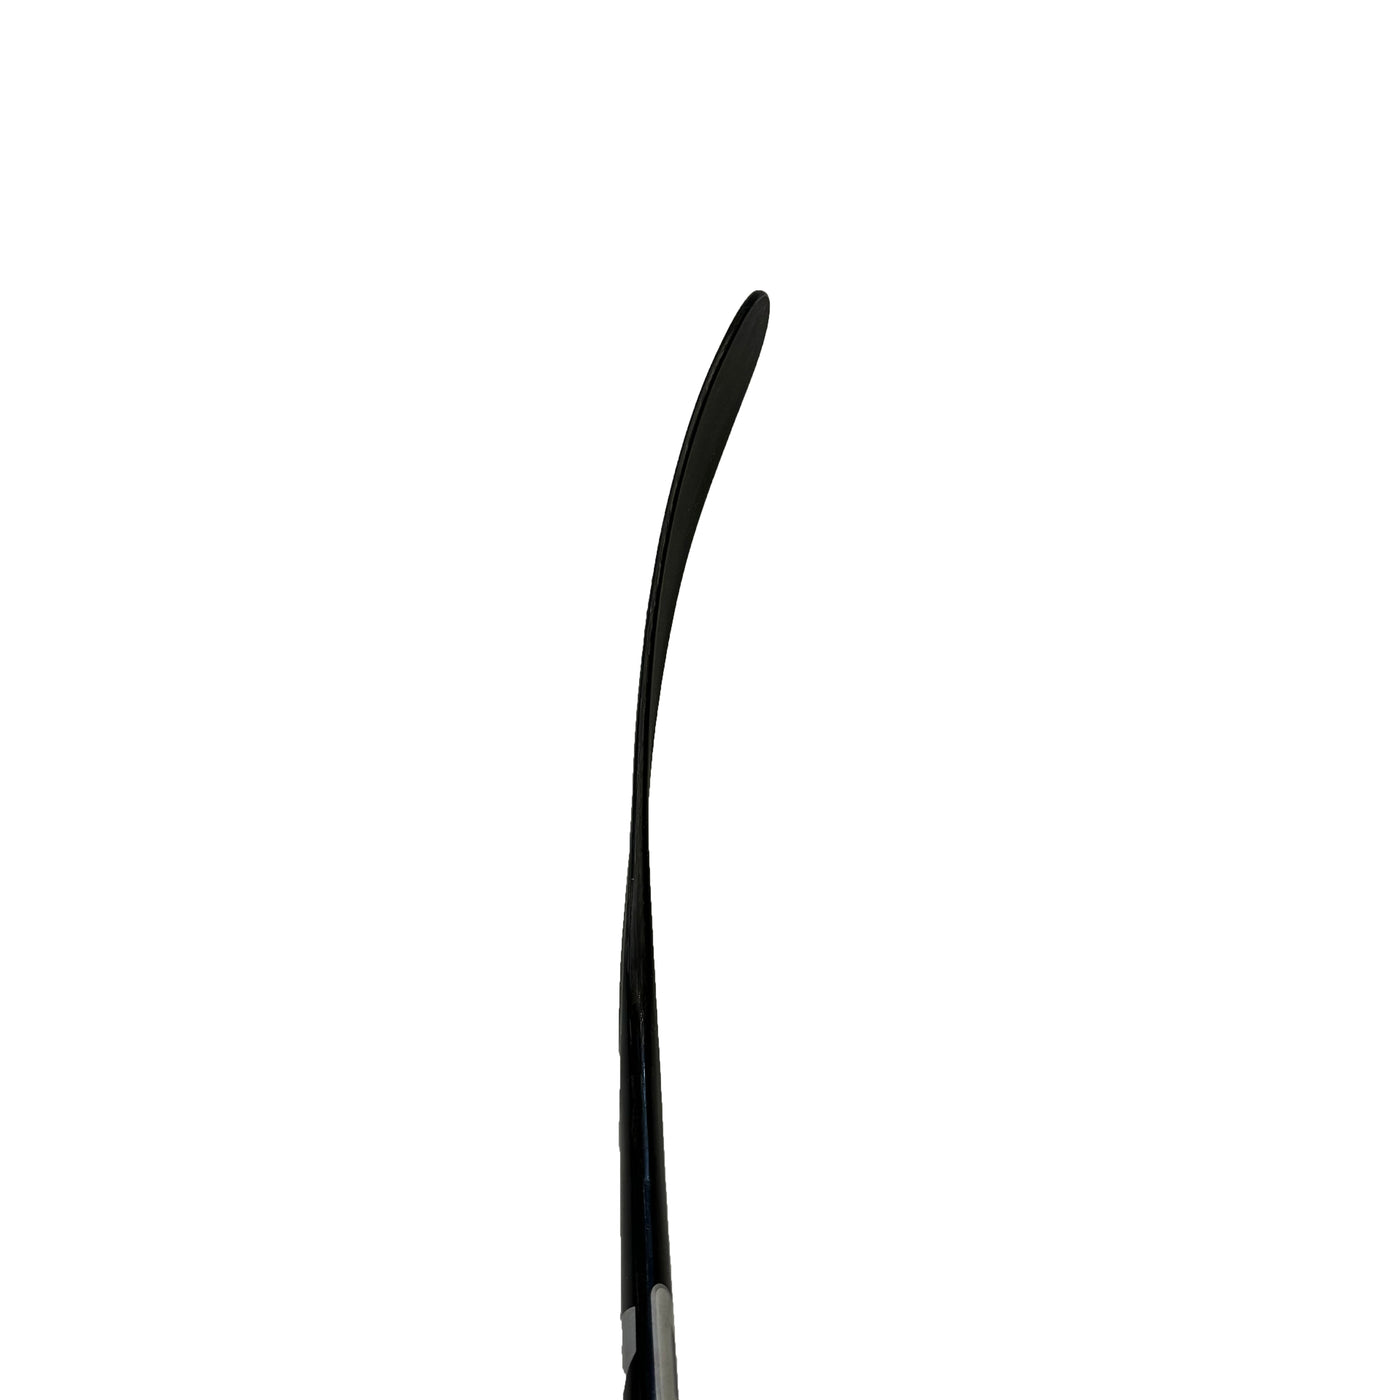 Bauer Nexus Geo - Pro Stock Hockey Stick - Travis Sanheim - Silver